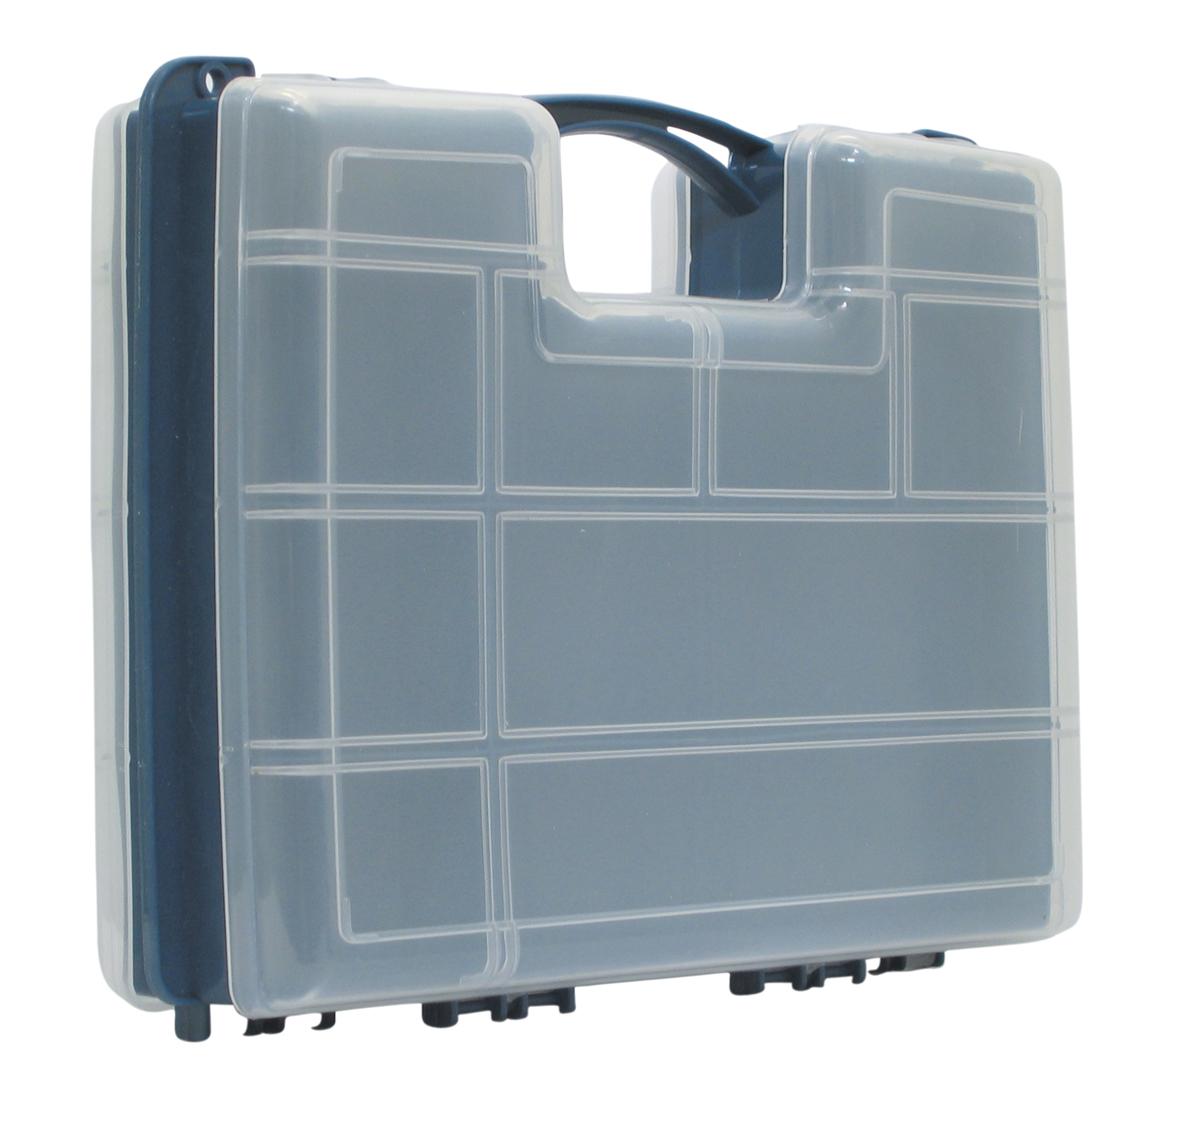 Boite de rangement type valise de 10 a 22 compartiments modulables 295 x 220 x 76mm